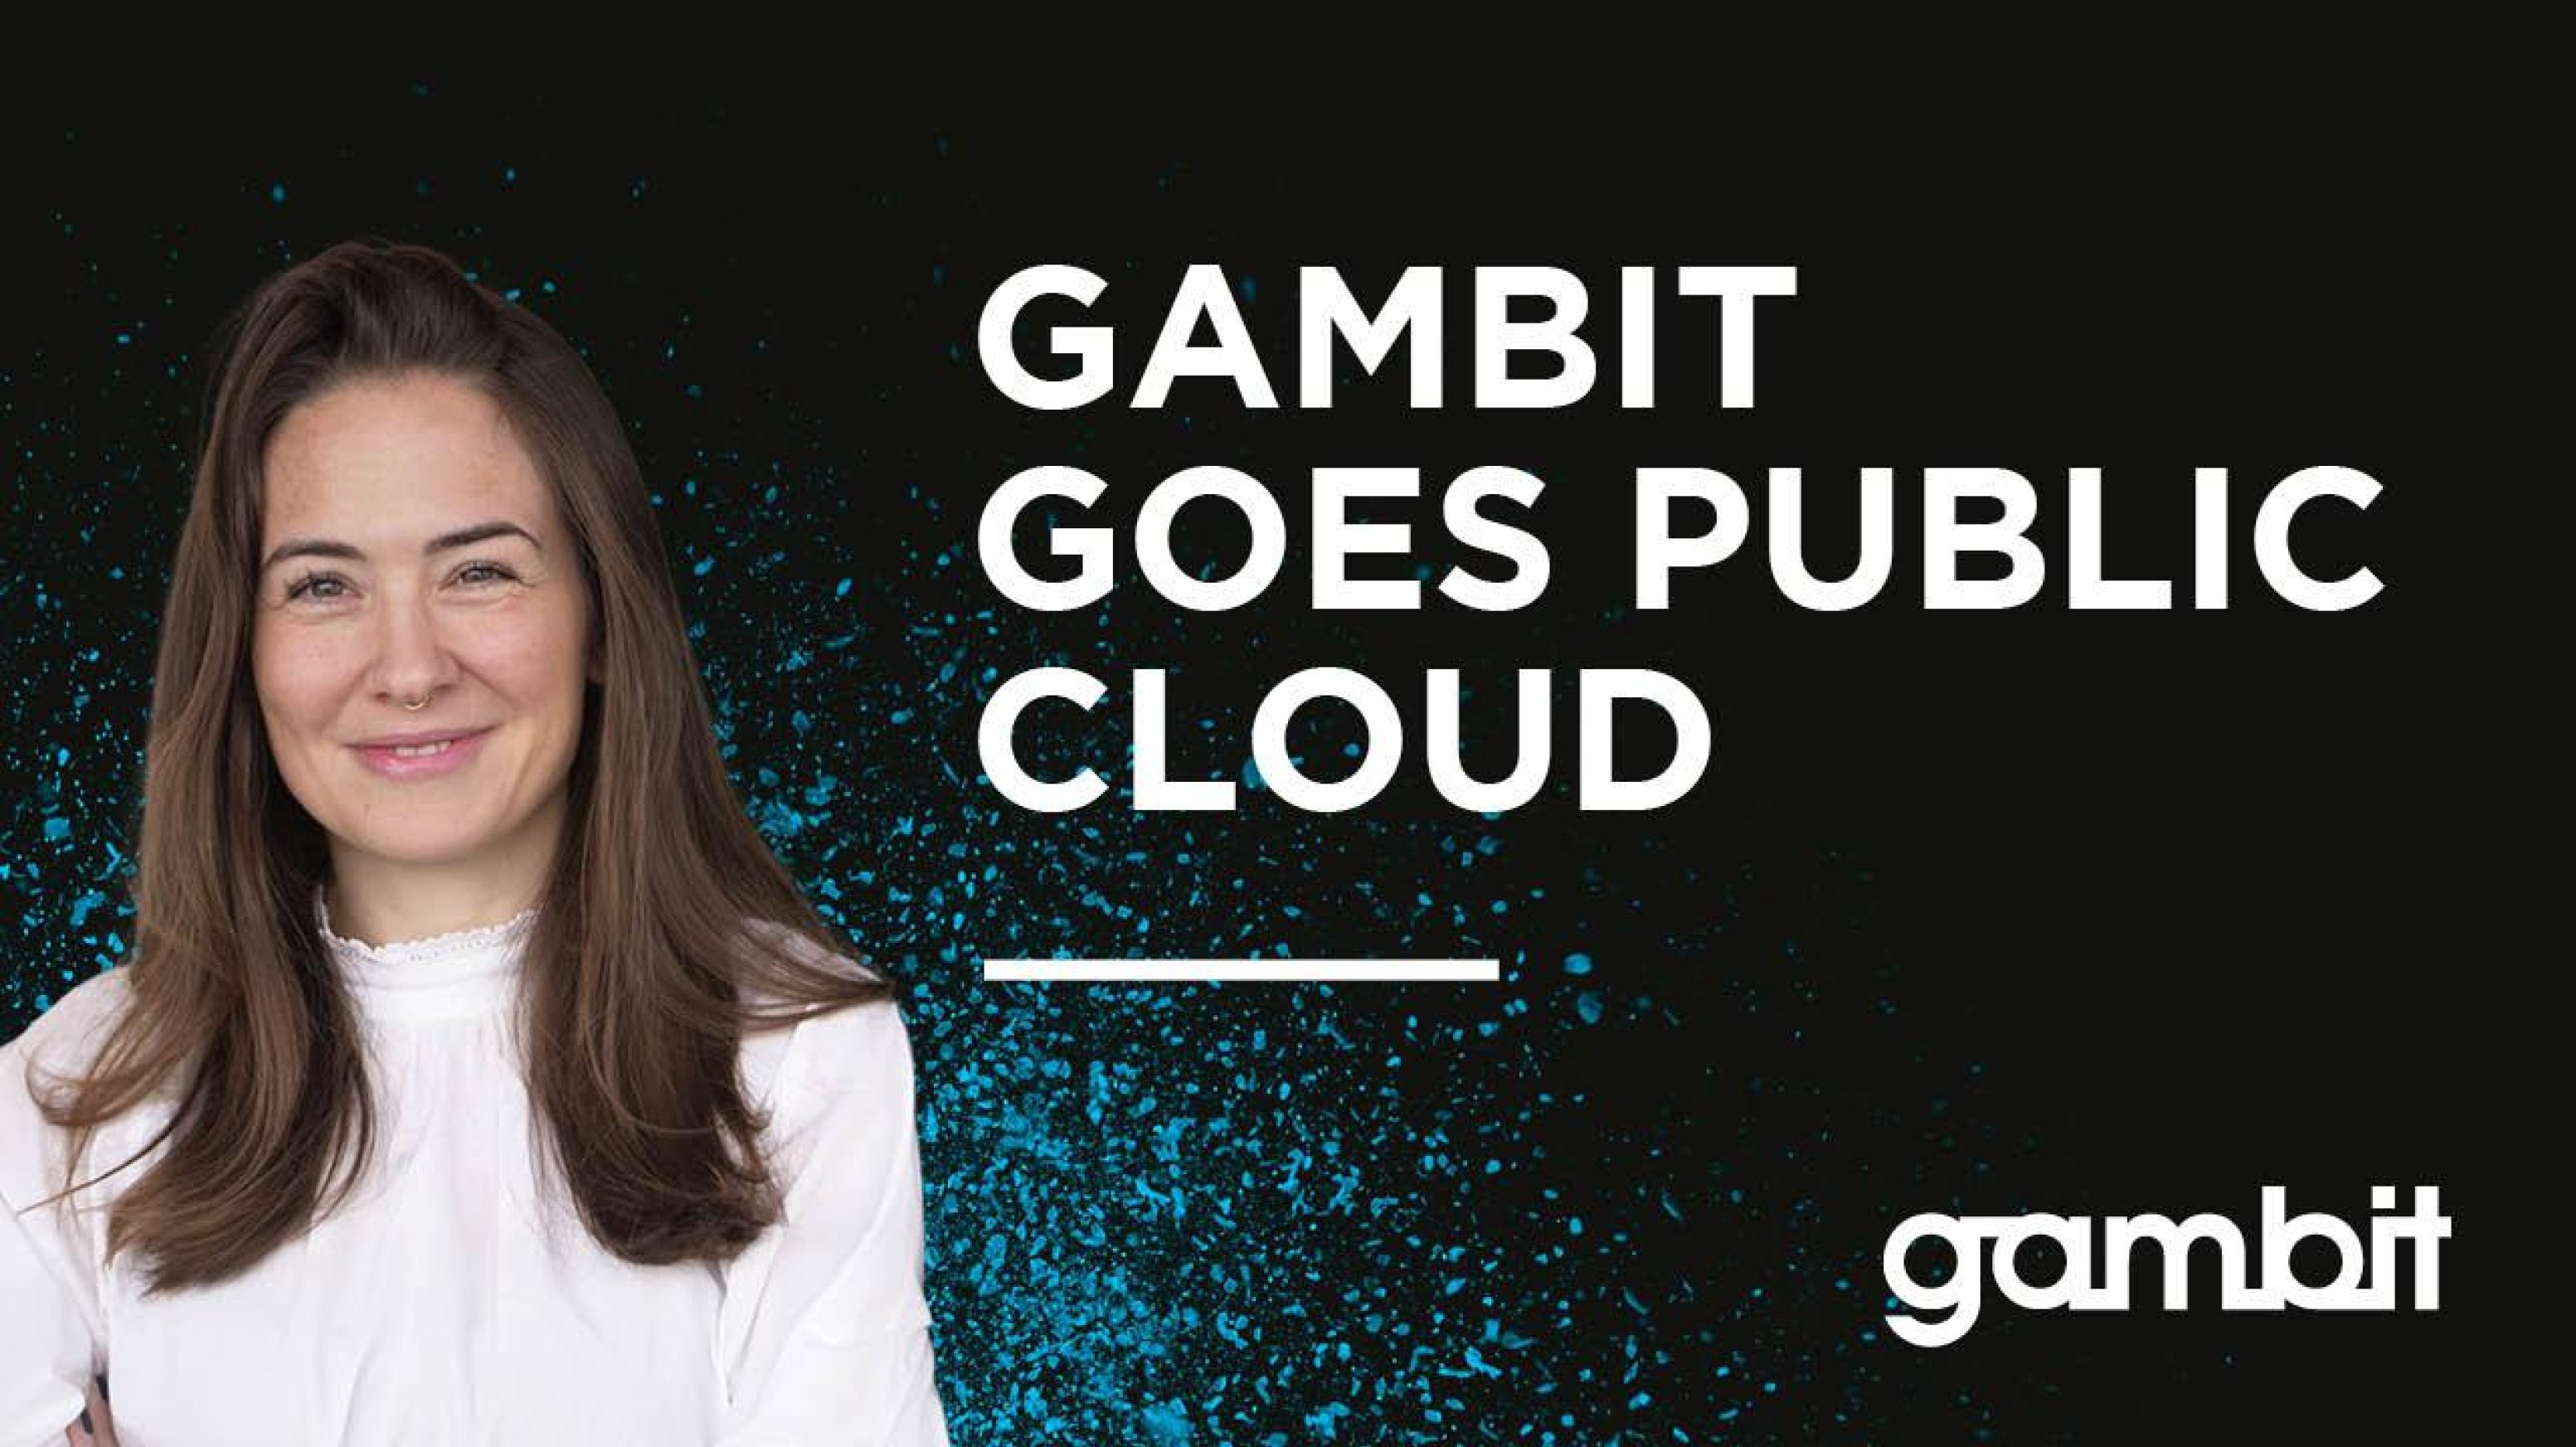 Thumbnail public cloud gambit goes public cloud